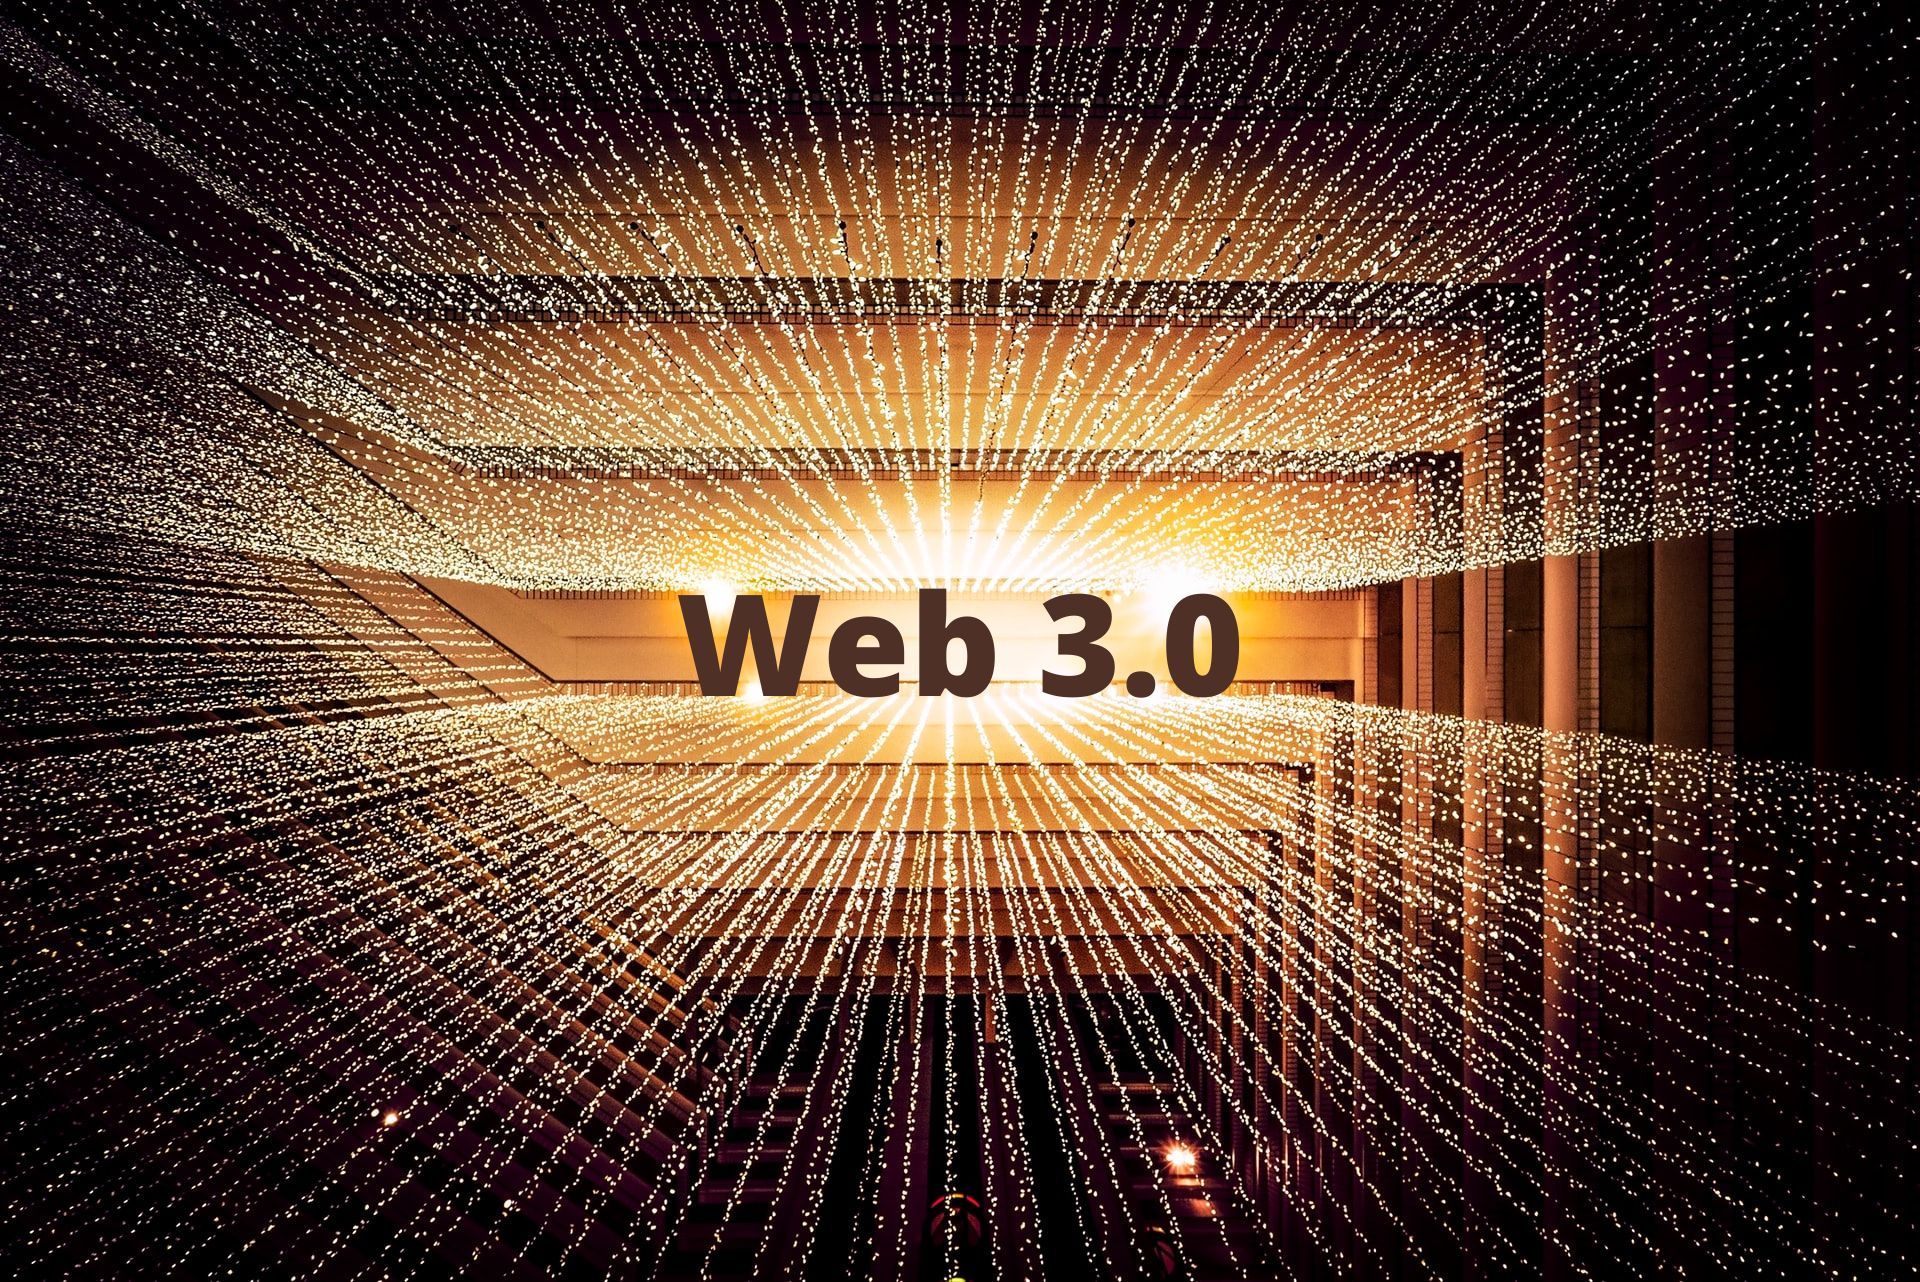 Latest Buzz in Web 3.0